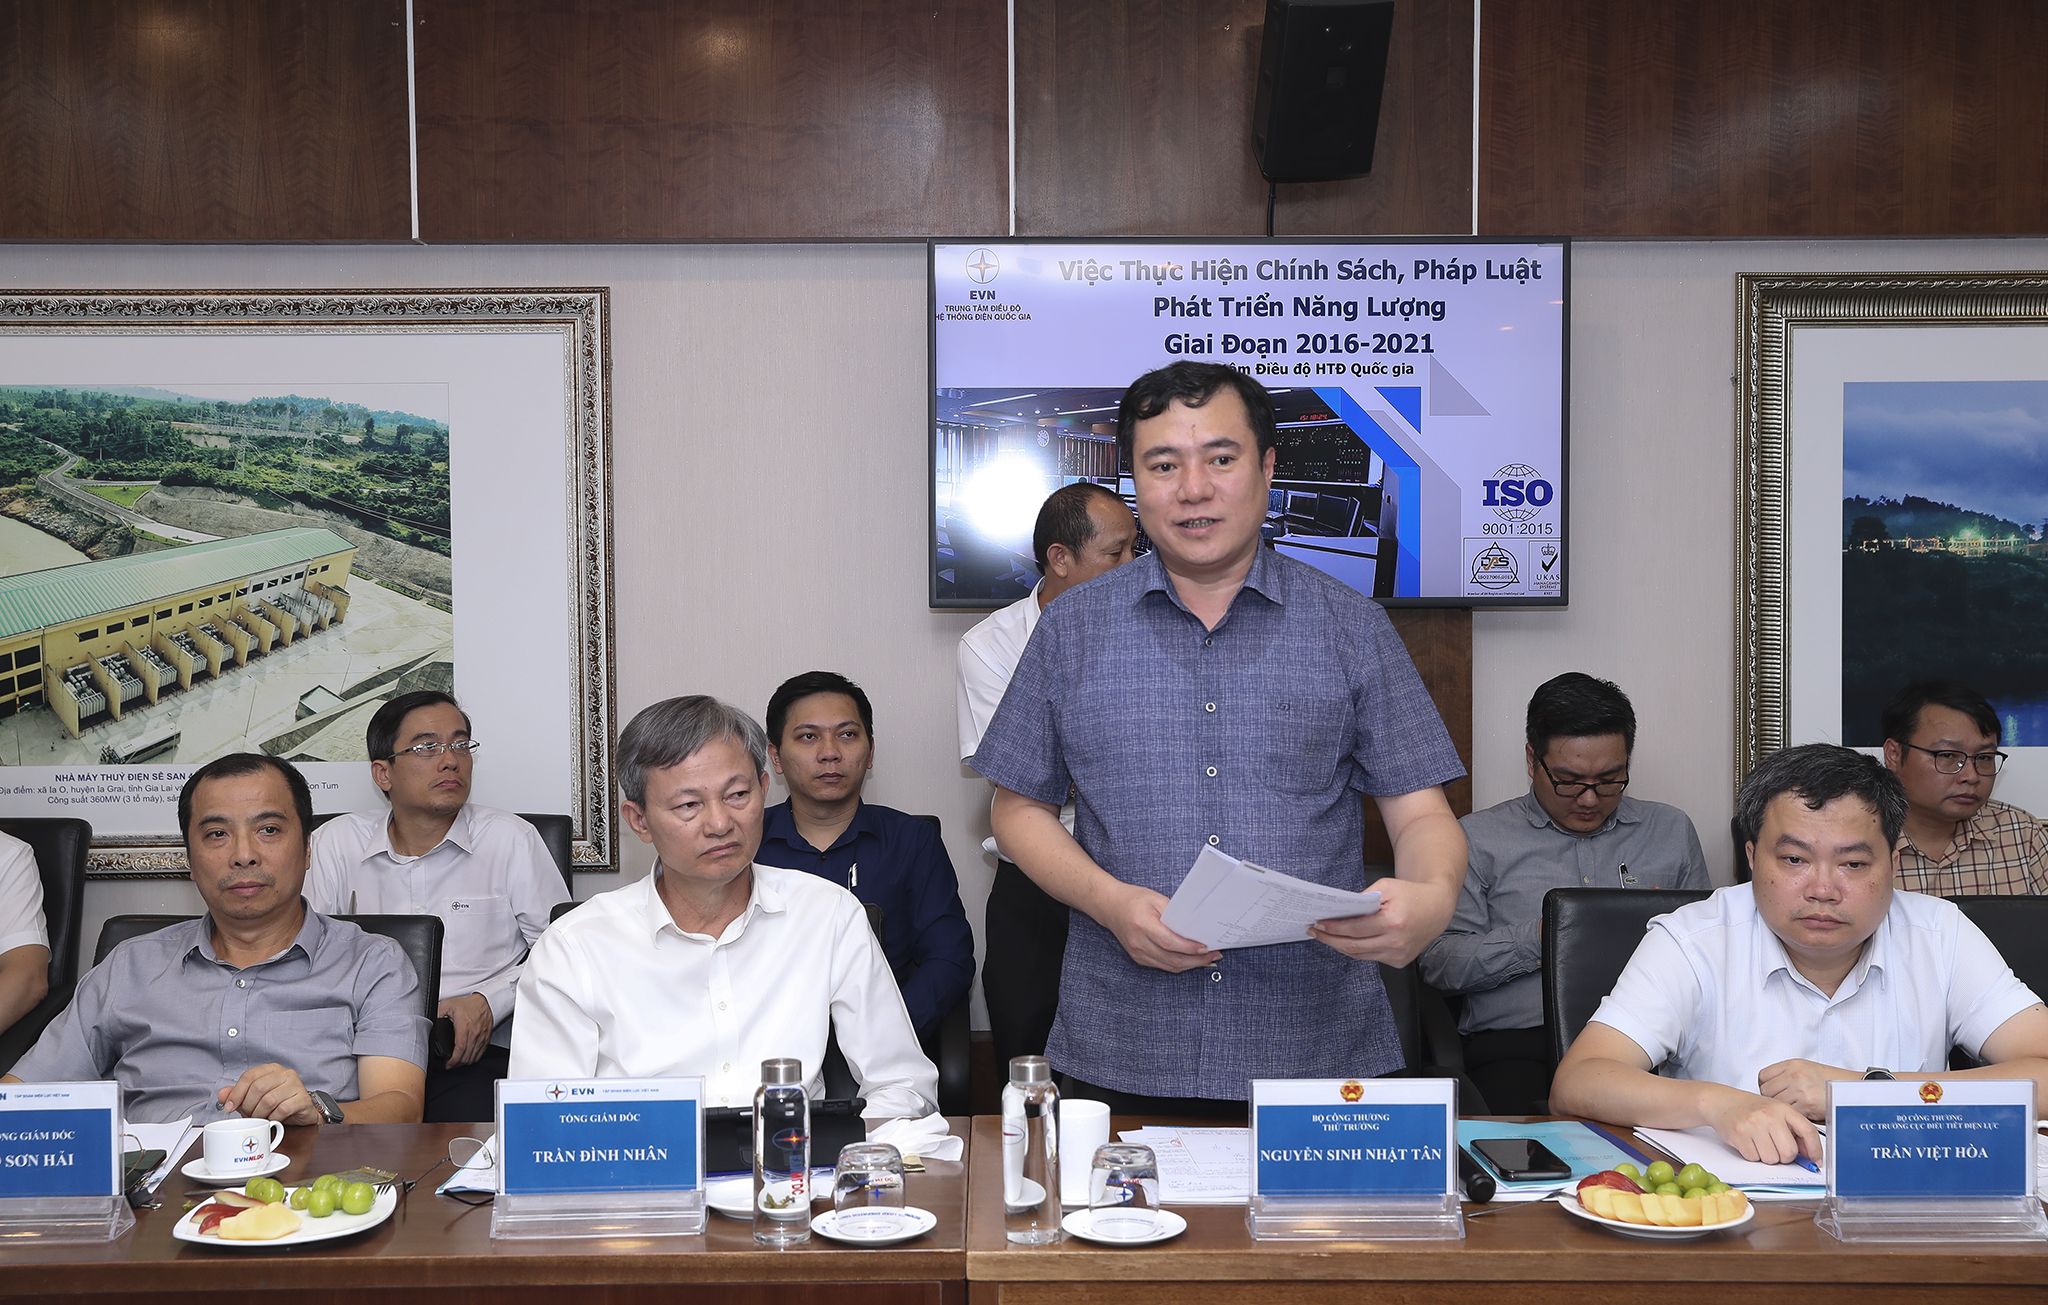 Phó Chủ tịch Quốc hội Nguyễn Đức Hải đánh giá cao hoạt động của A0 trong điều hành hệ thống điện - thị trường điện